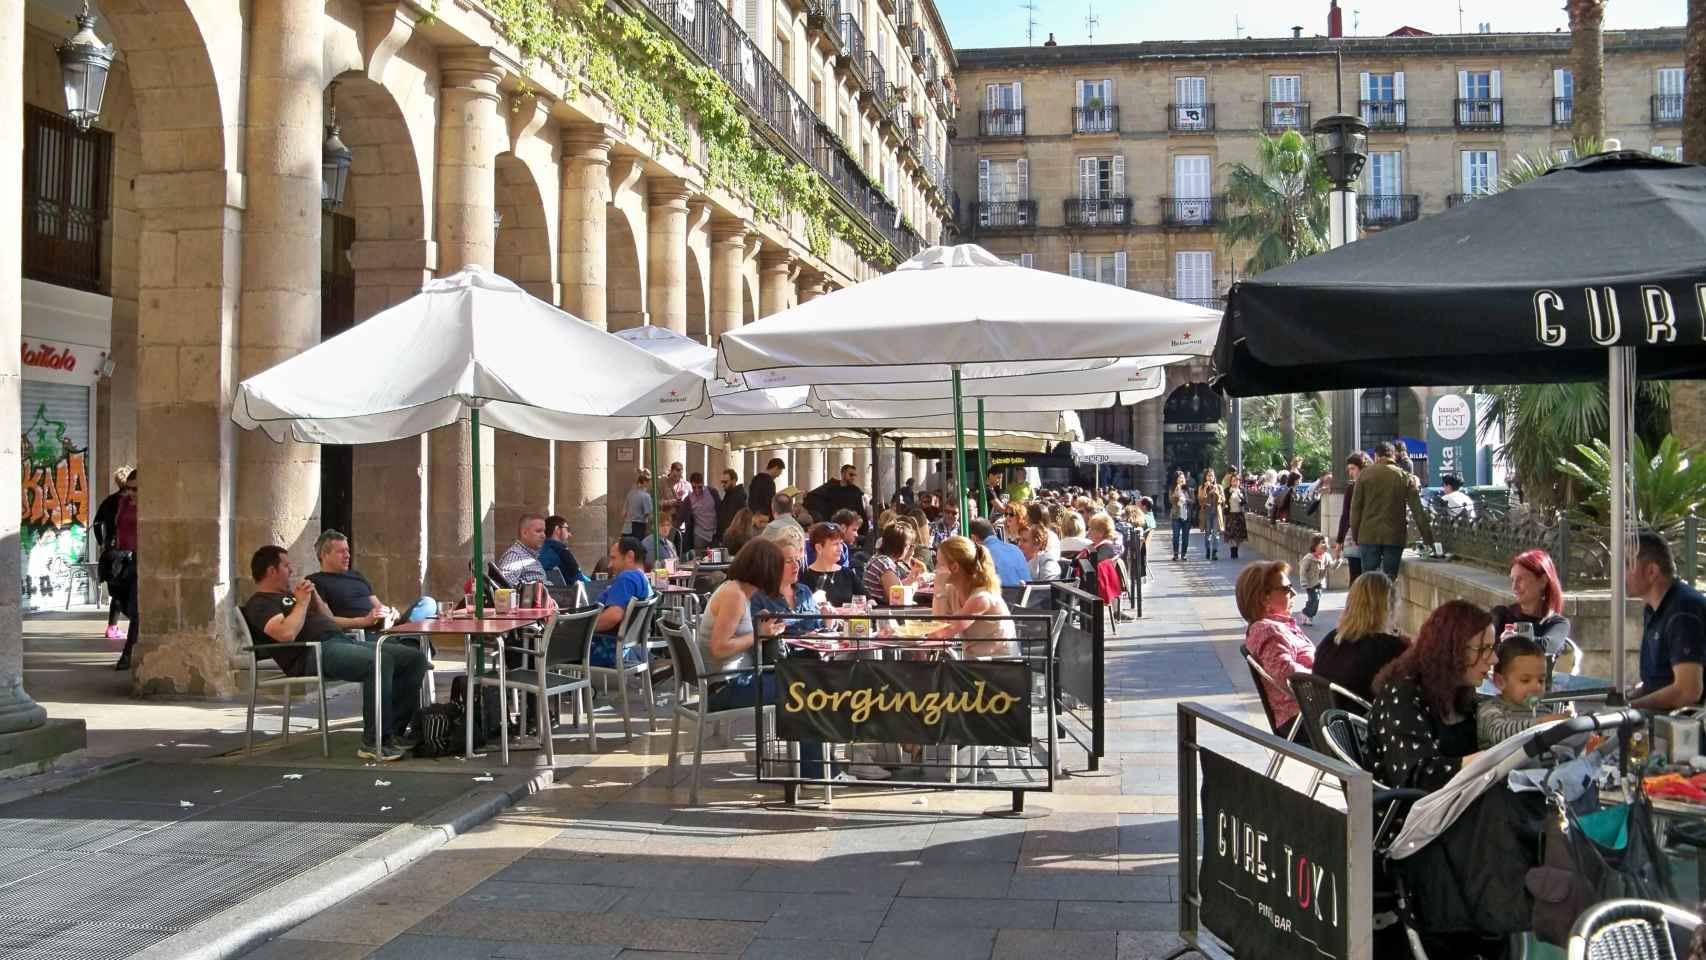 Terrazas hosteleras en Bilbao./ EP